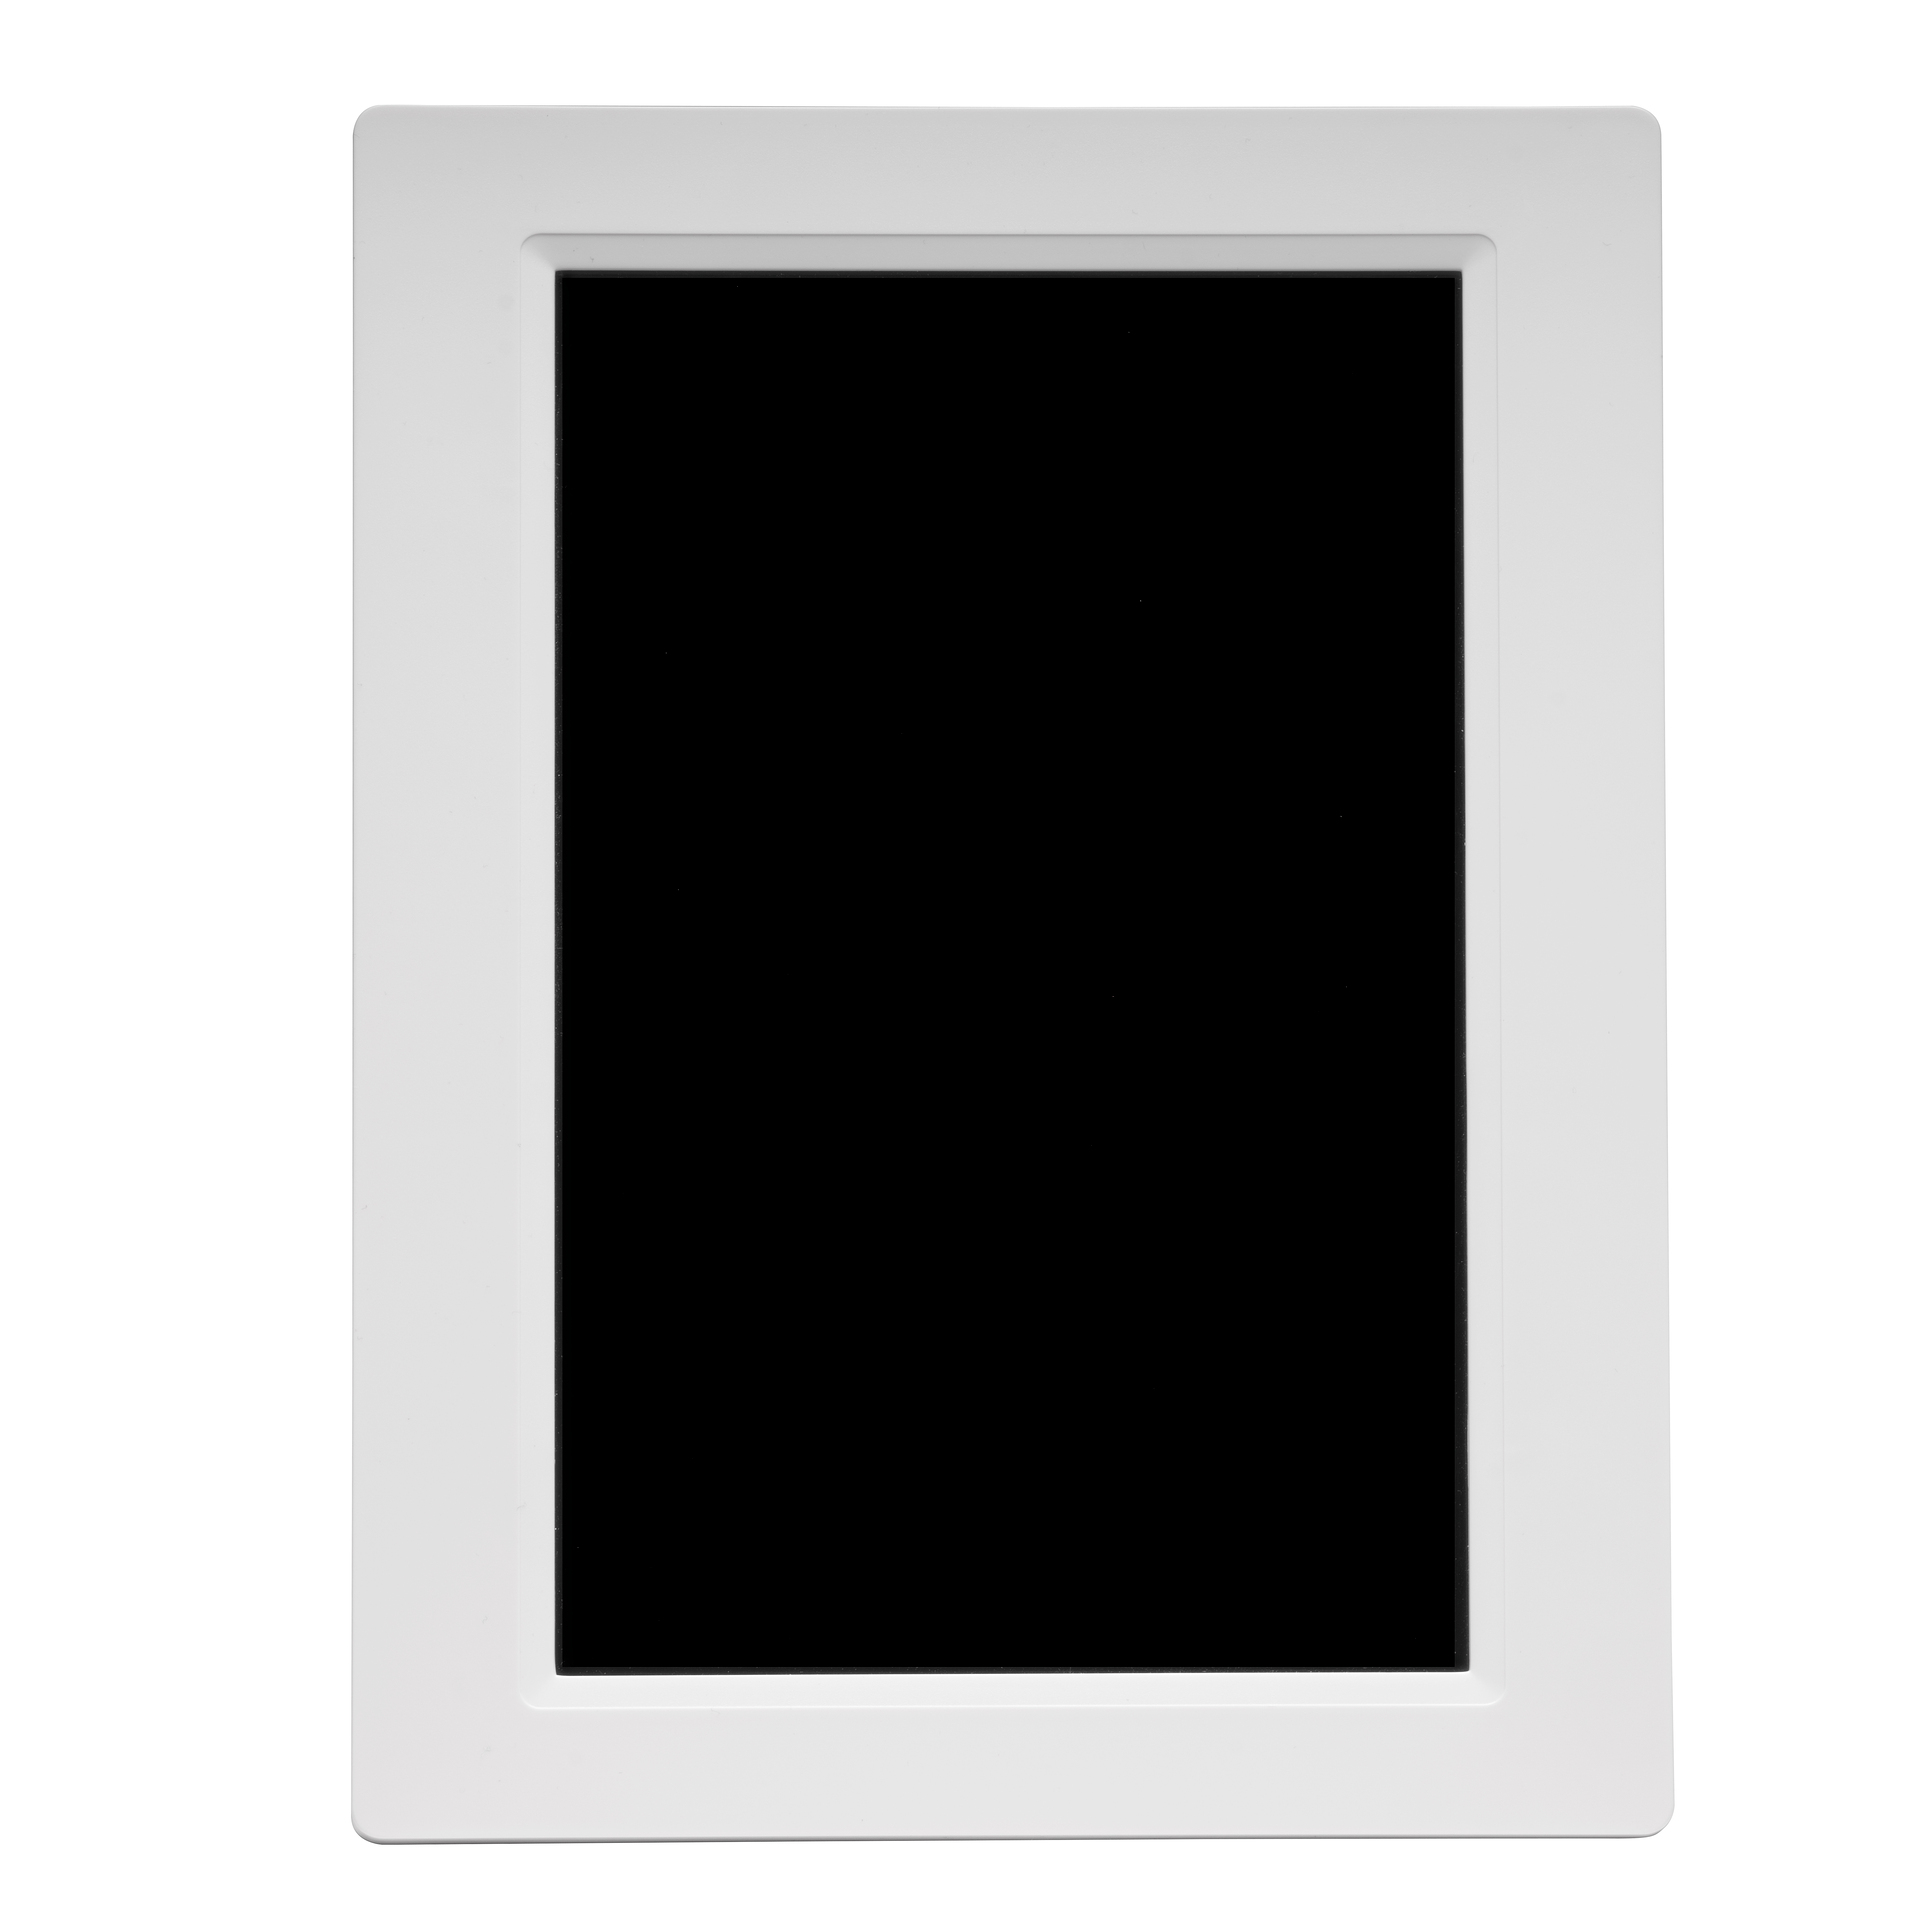 DENVER PFF-1015 Monitor, 25,65 cm, x 1280 800, weiß